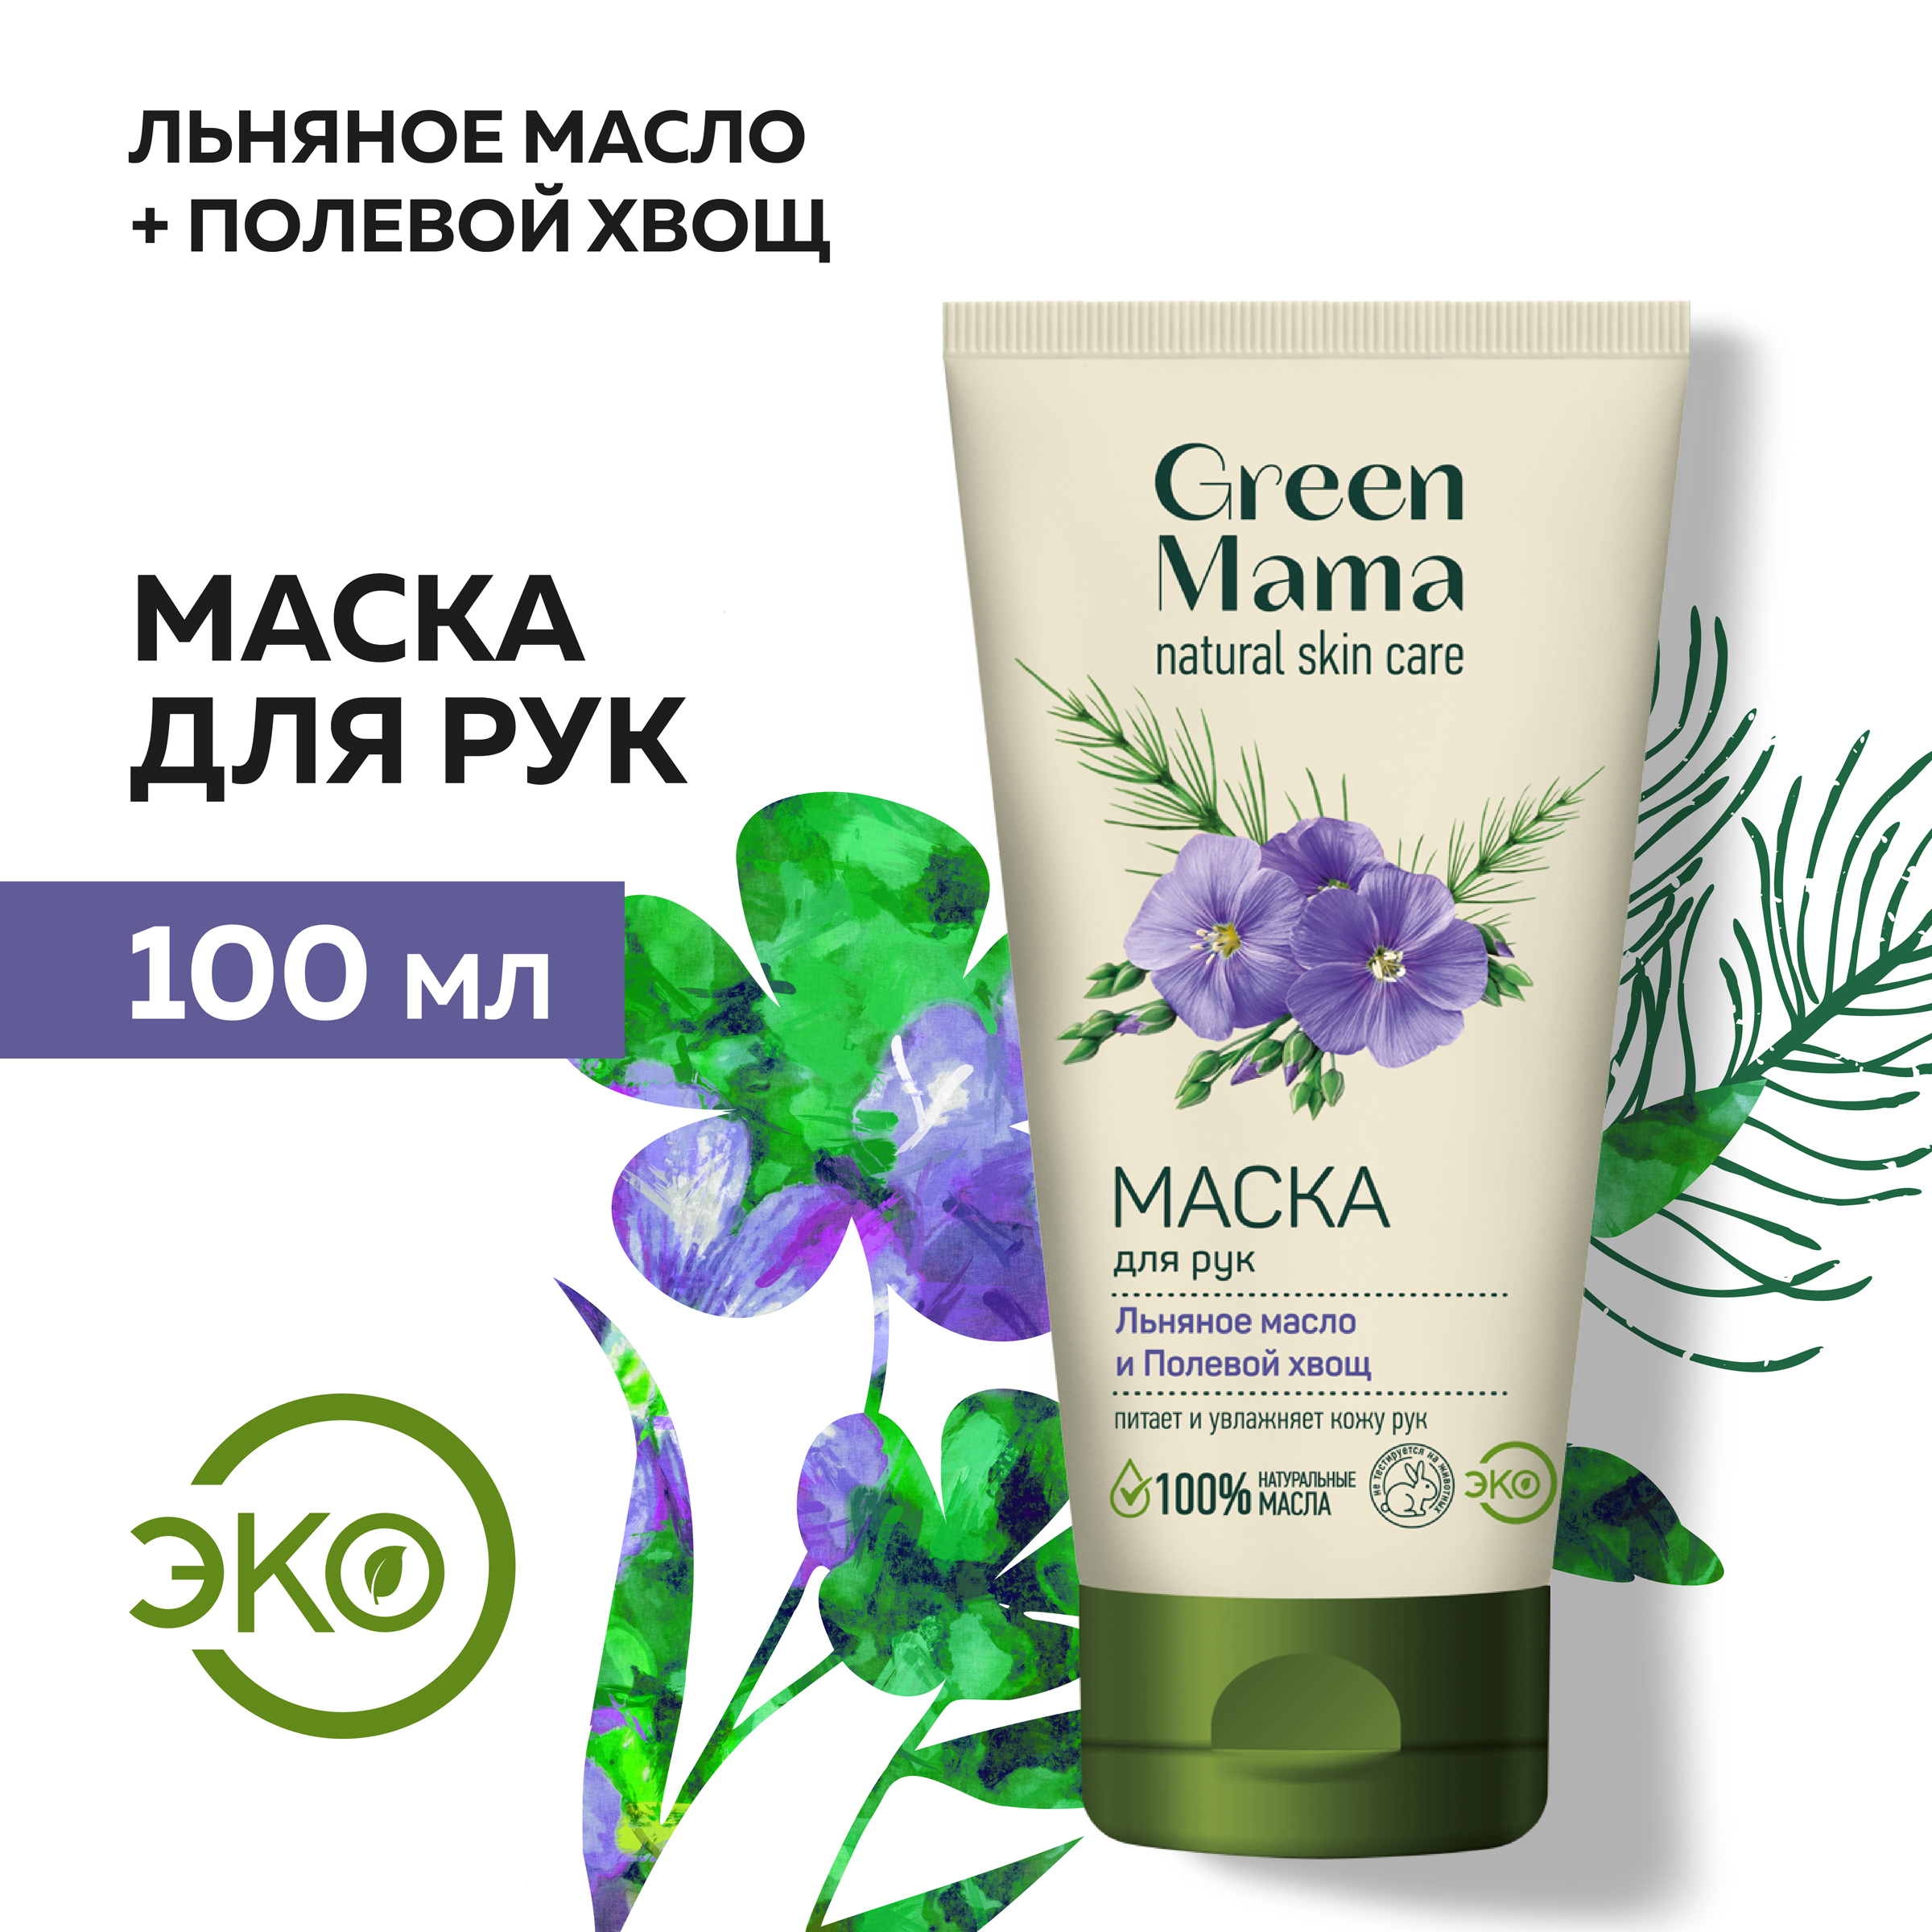 Маска для рук Green Mama Льняное масло и полевой хвощ 100 мл green mama маска для рук льняное масло и полевой хвощ natural skin care